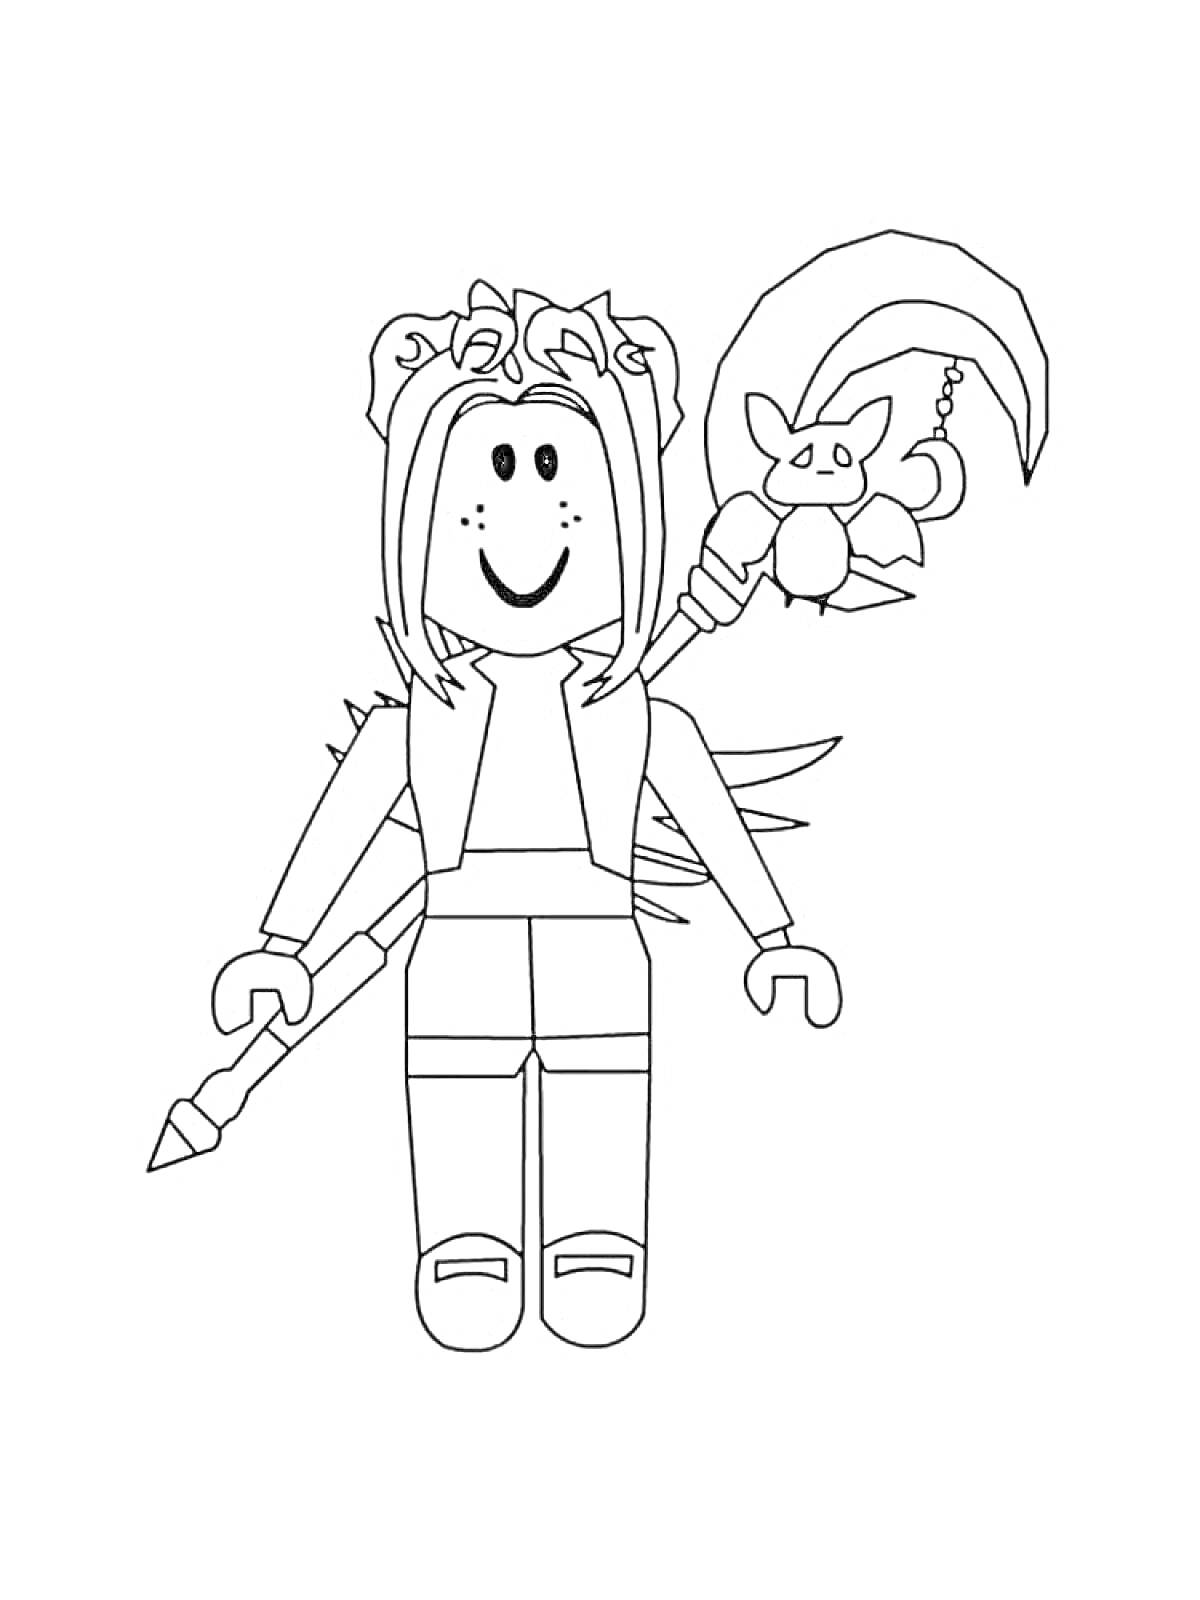 Раскраска Персонаж из Roblox с длинными волосами, короной, посохом с крыльями и милым существом на конце, копьем в руке